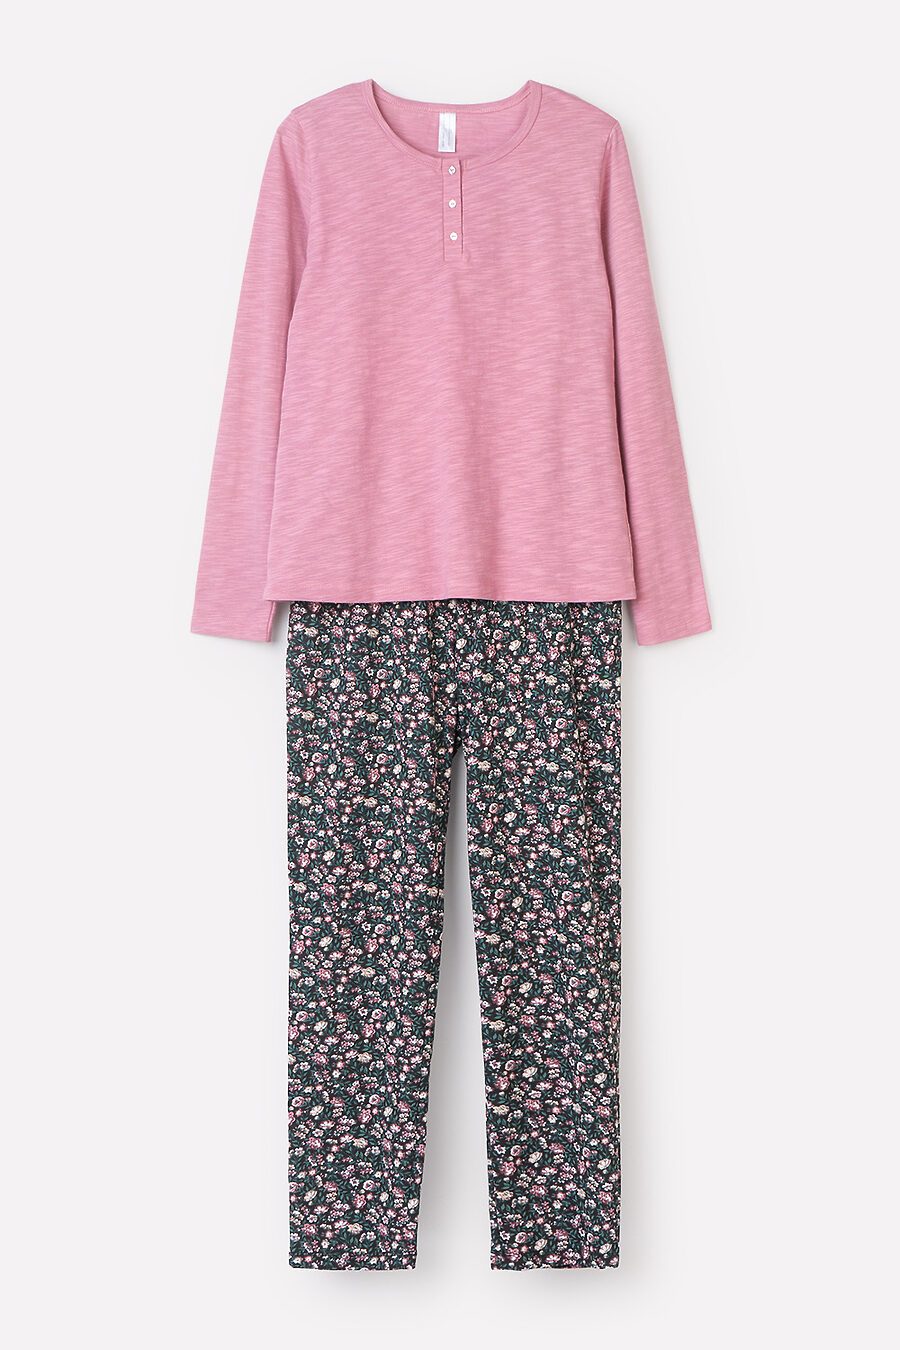 Пижама для женщин TRIKOZZA 808162 купить оптом от производителя. Совместная покупка женской одежды в OptMoyo